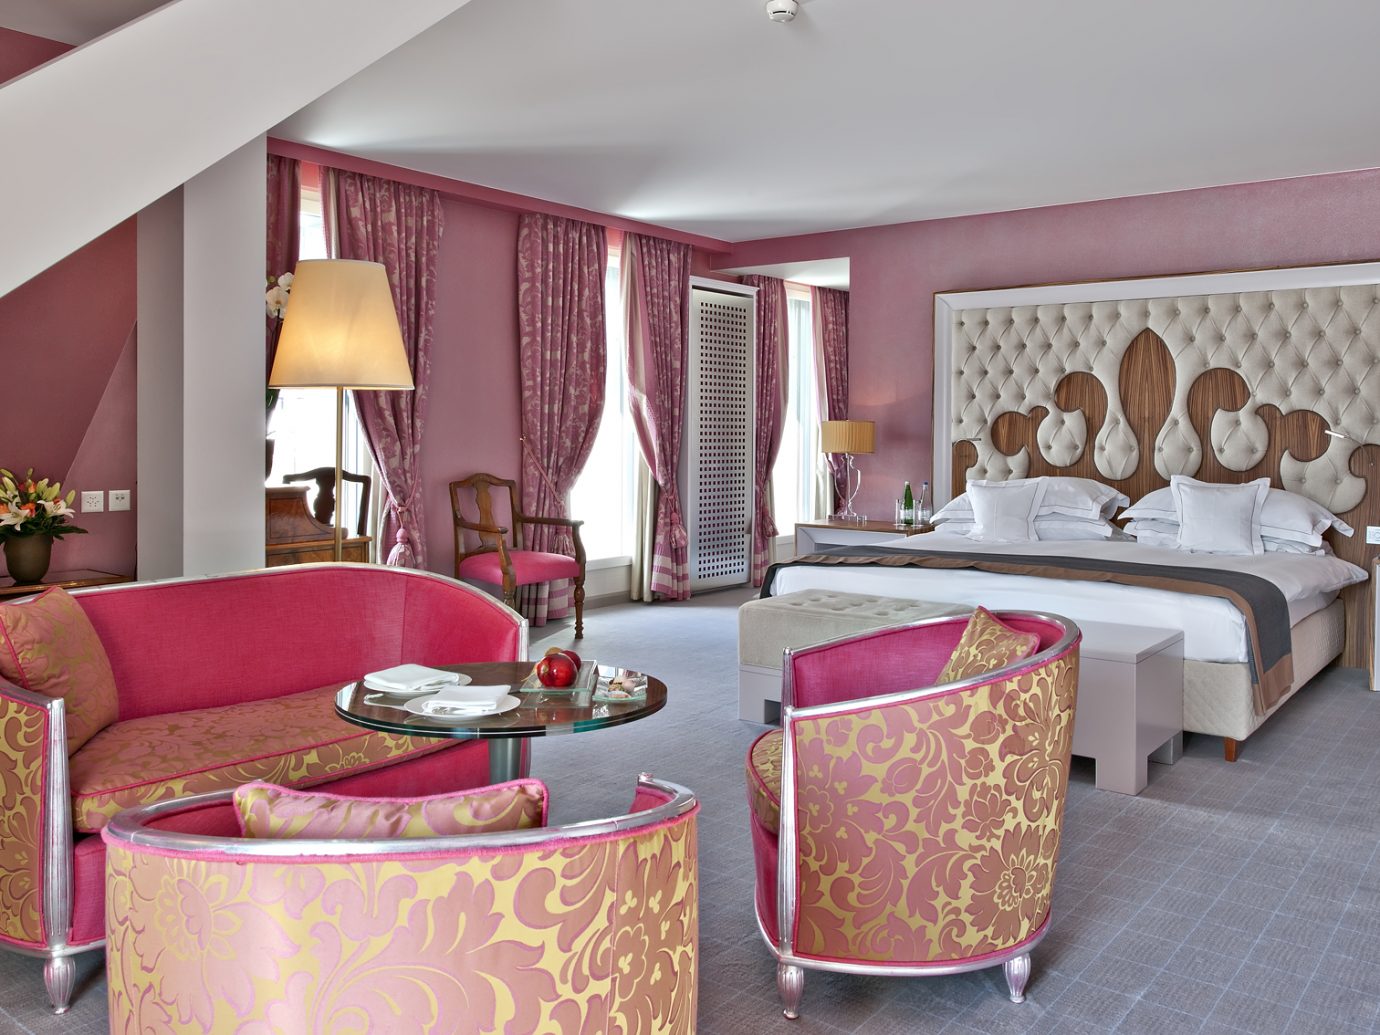 Bedroom at Carlton Hotel in St. Moritz